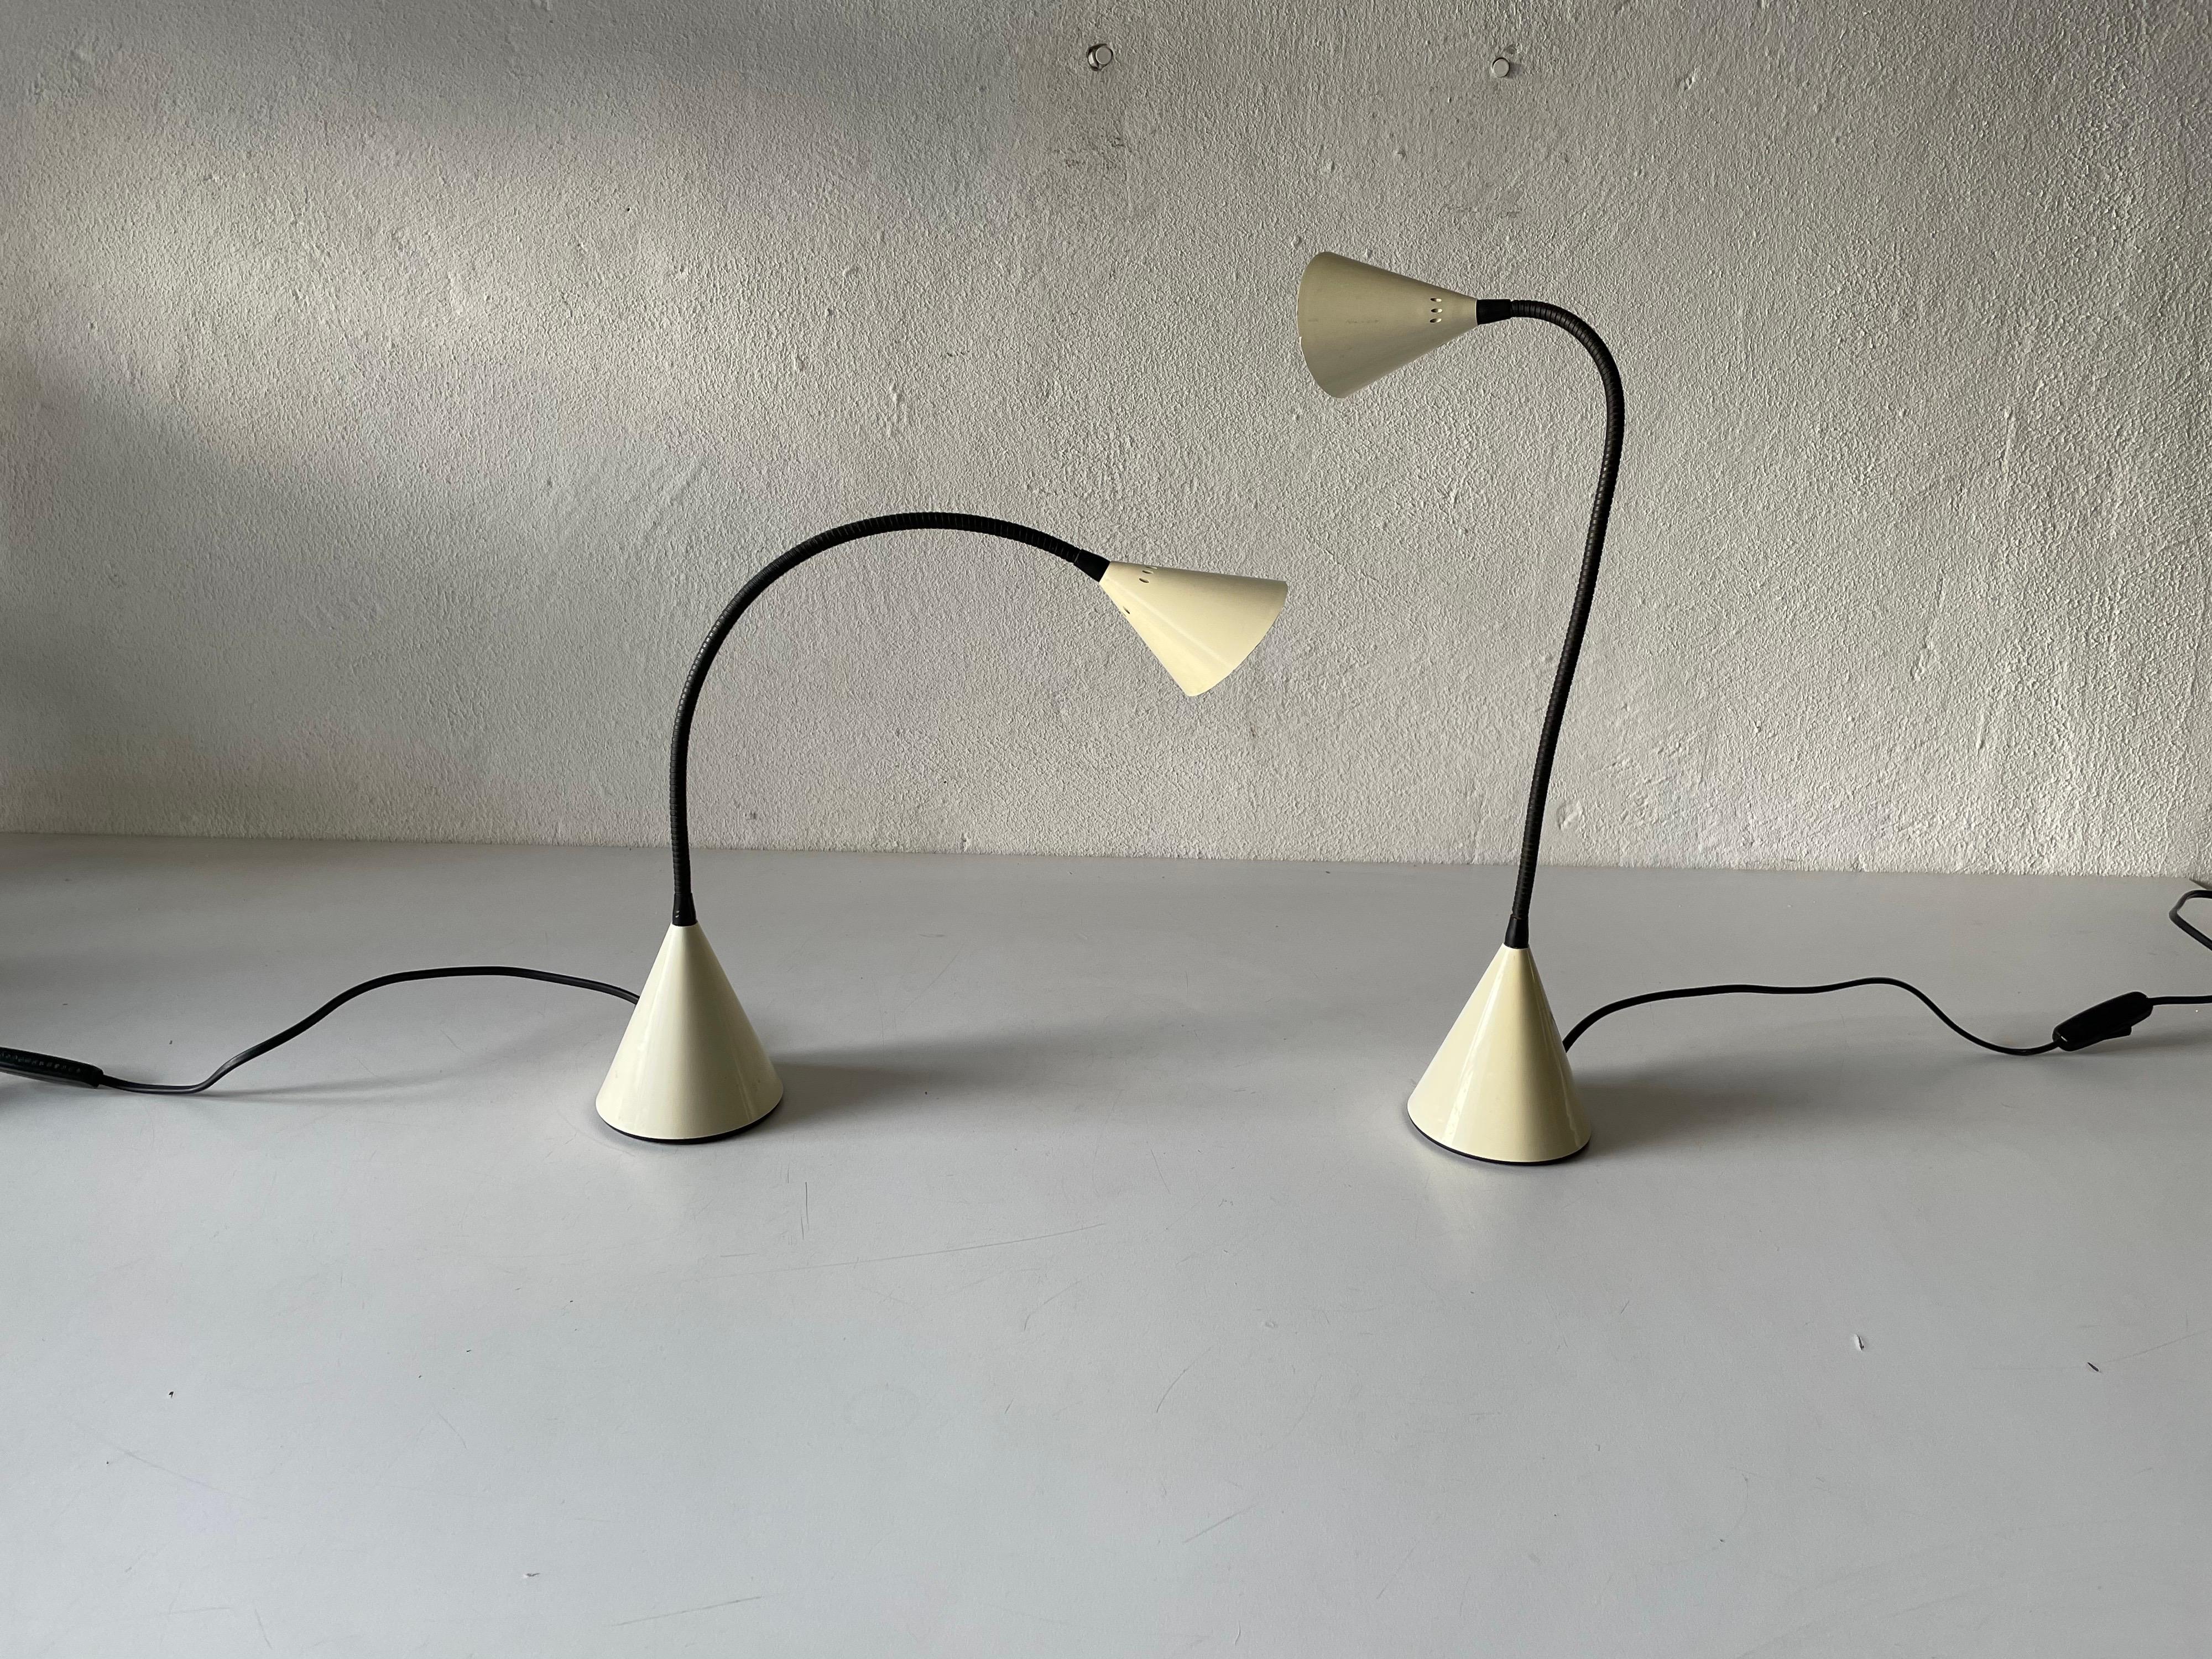 Paire de lampes de bureau de S. Renko pour Egoluce, années 1980, Italie
Modèle Twist

Un design minimal 
Très haute qualité.
Entièrement fonctionnel.
Corps réglable.

Câble et fiche d'origine. Allumez et éteignez le câble. 
Cette lampe est